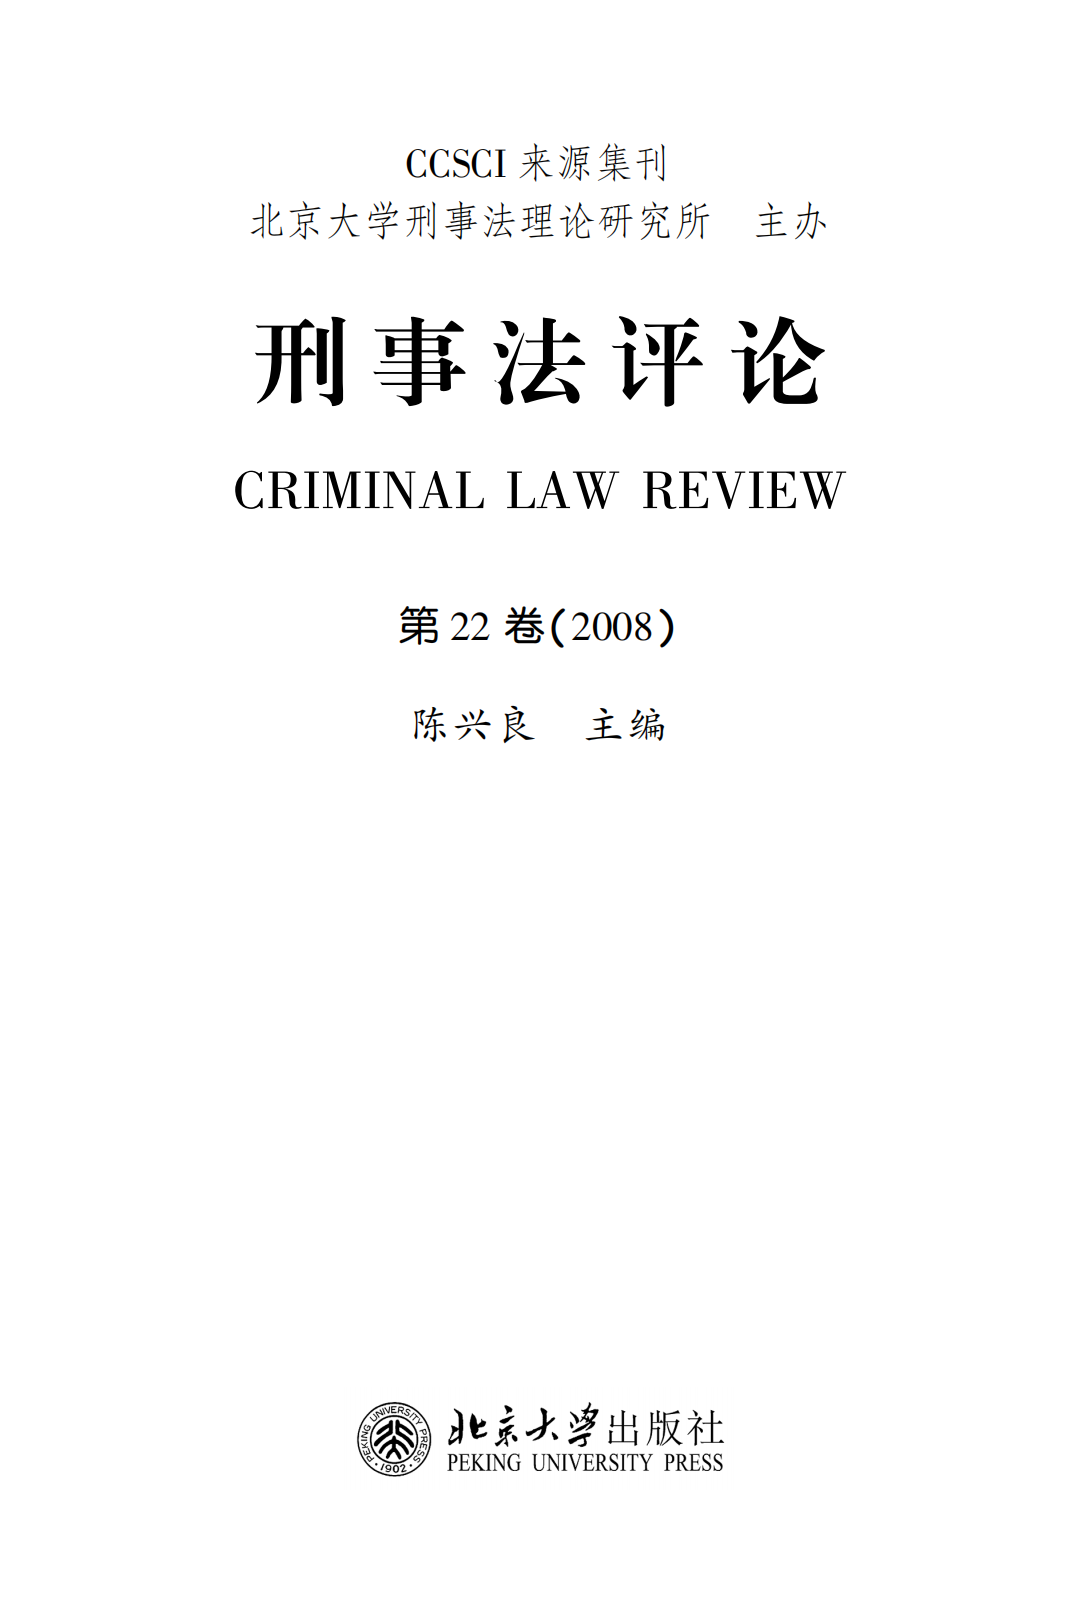 提取自刑事法评论（第22卷）_00.png